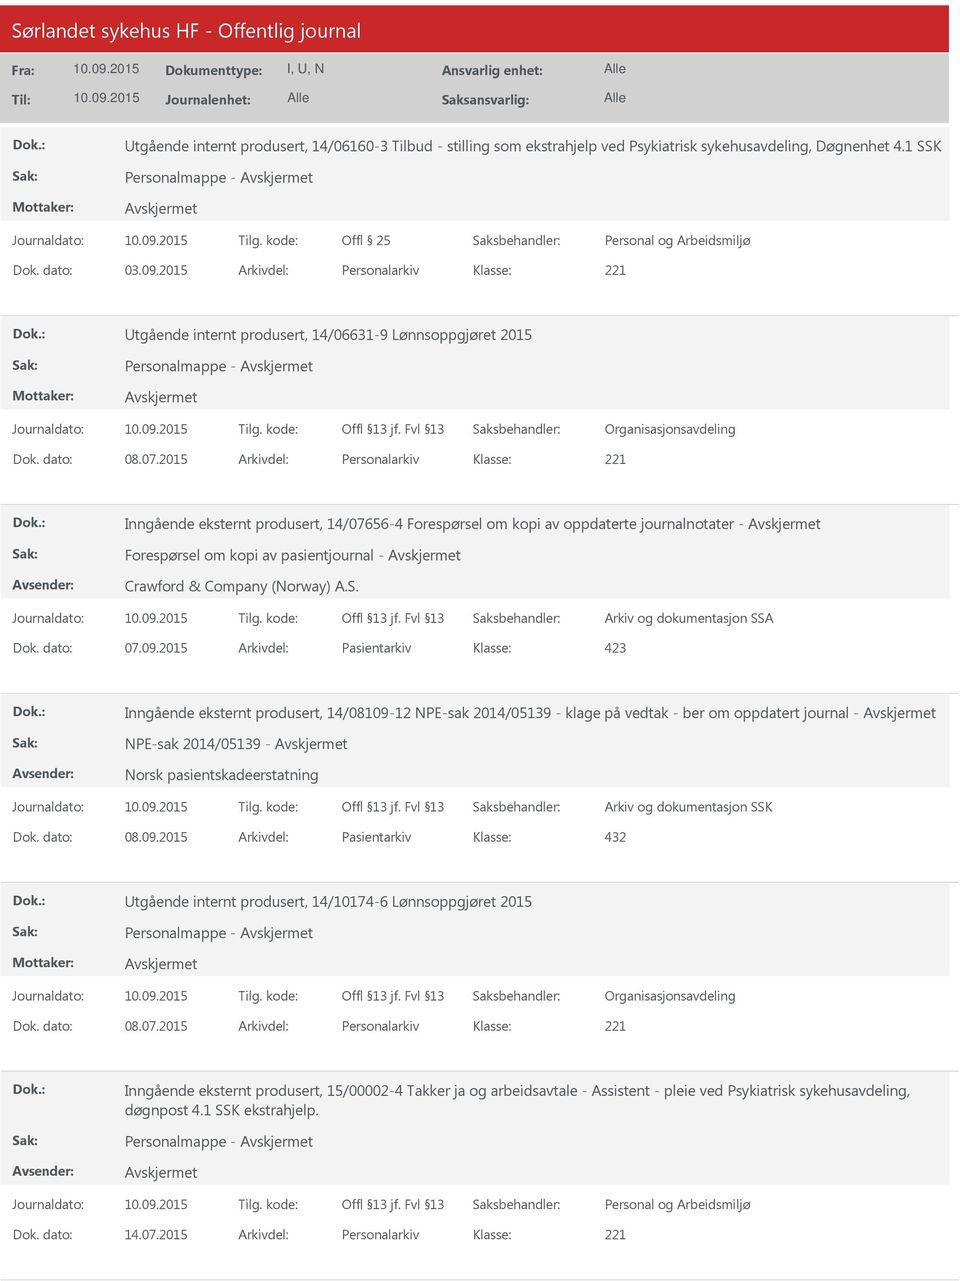 2015 Arkivdel: Personalarkiv Inngående eksternt produsert, 14/07656-4 Forespørsel om kopi av oppdaterte journalnotater - Forespørsel om kopi av pasientjournal - Crawford & Company (Norway) A.S.